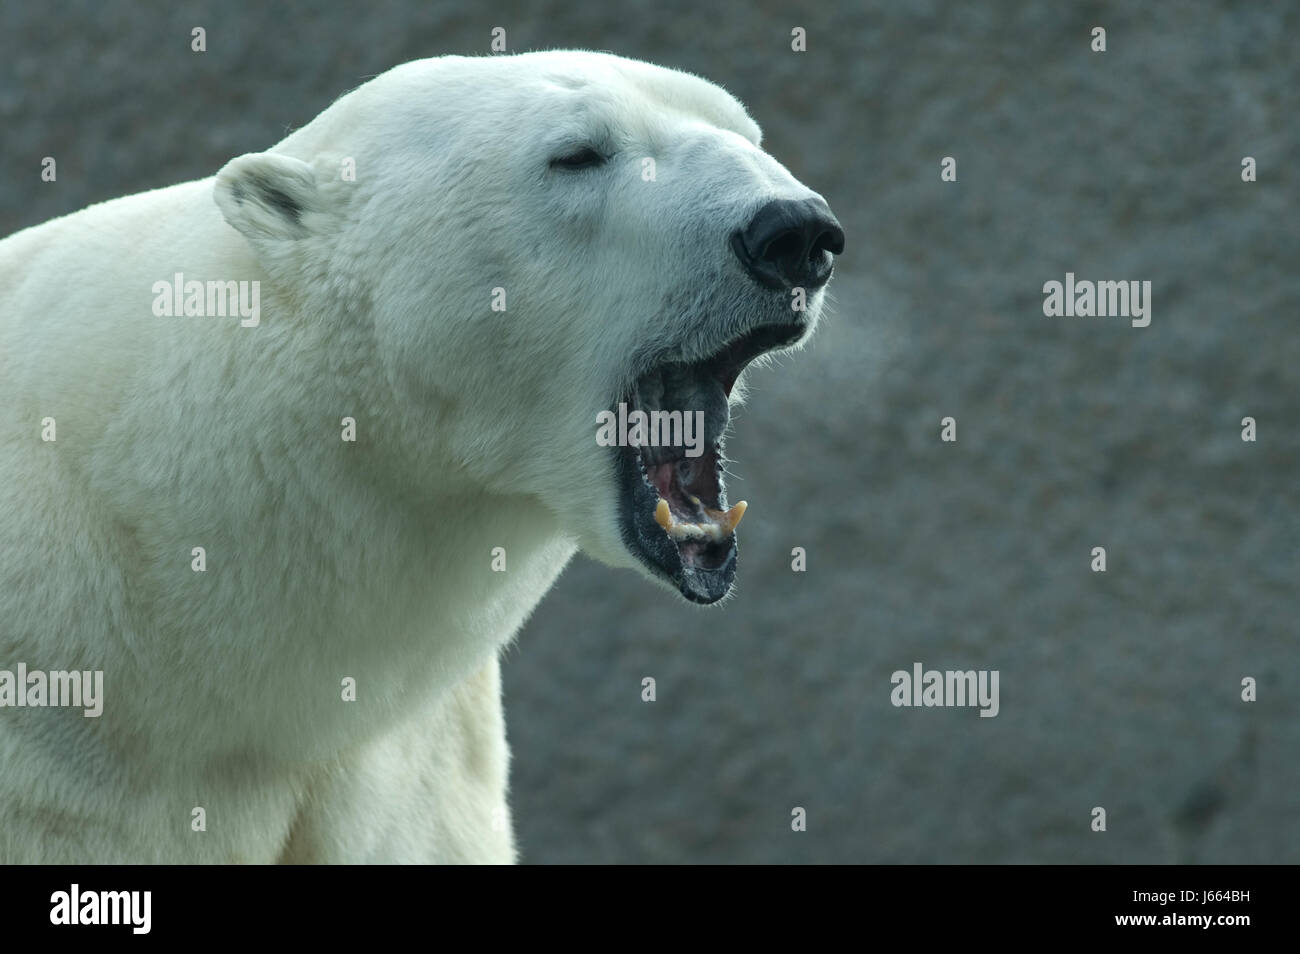 L'ours polaire l'ours prédateur bâillement bâillement rugissant rugissement moo mammifère animal dangereux Banque D'Images